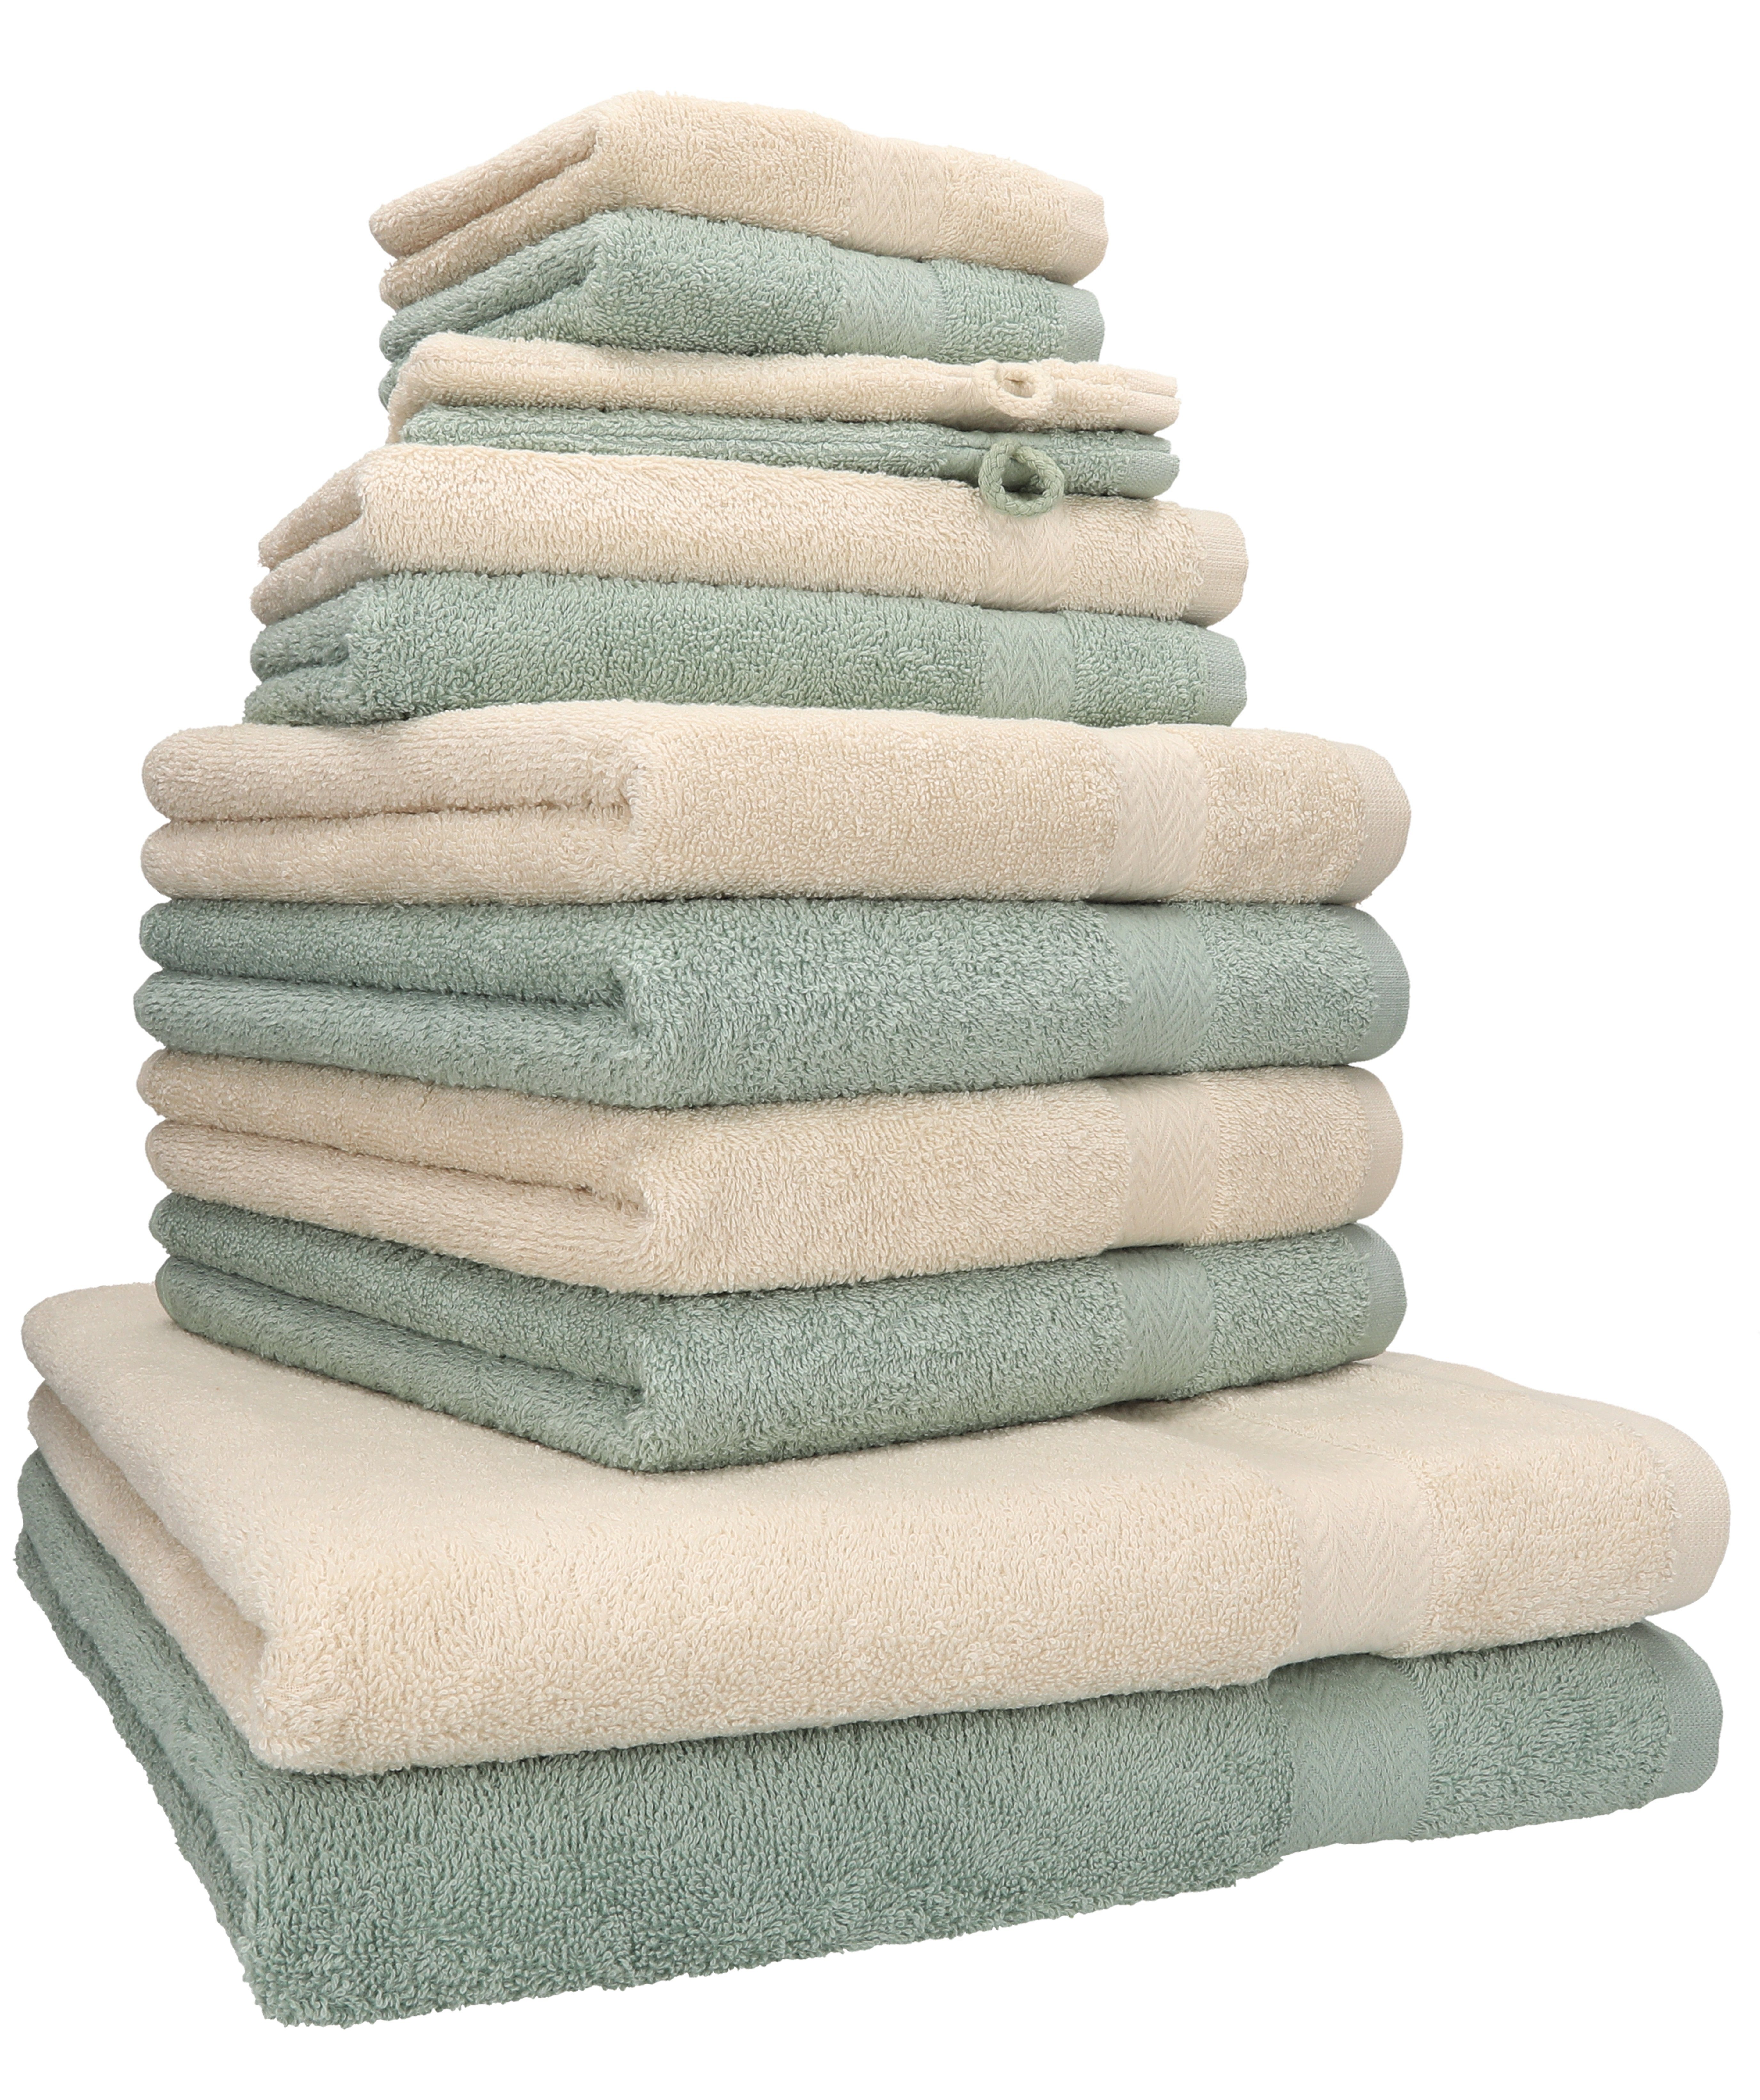 Betz Handtuch Set 12-tlg. Handtuch 100% Premium Baumwolle, Sand/heugrün, Farbe (12-tlg) Set